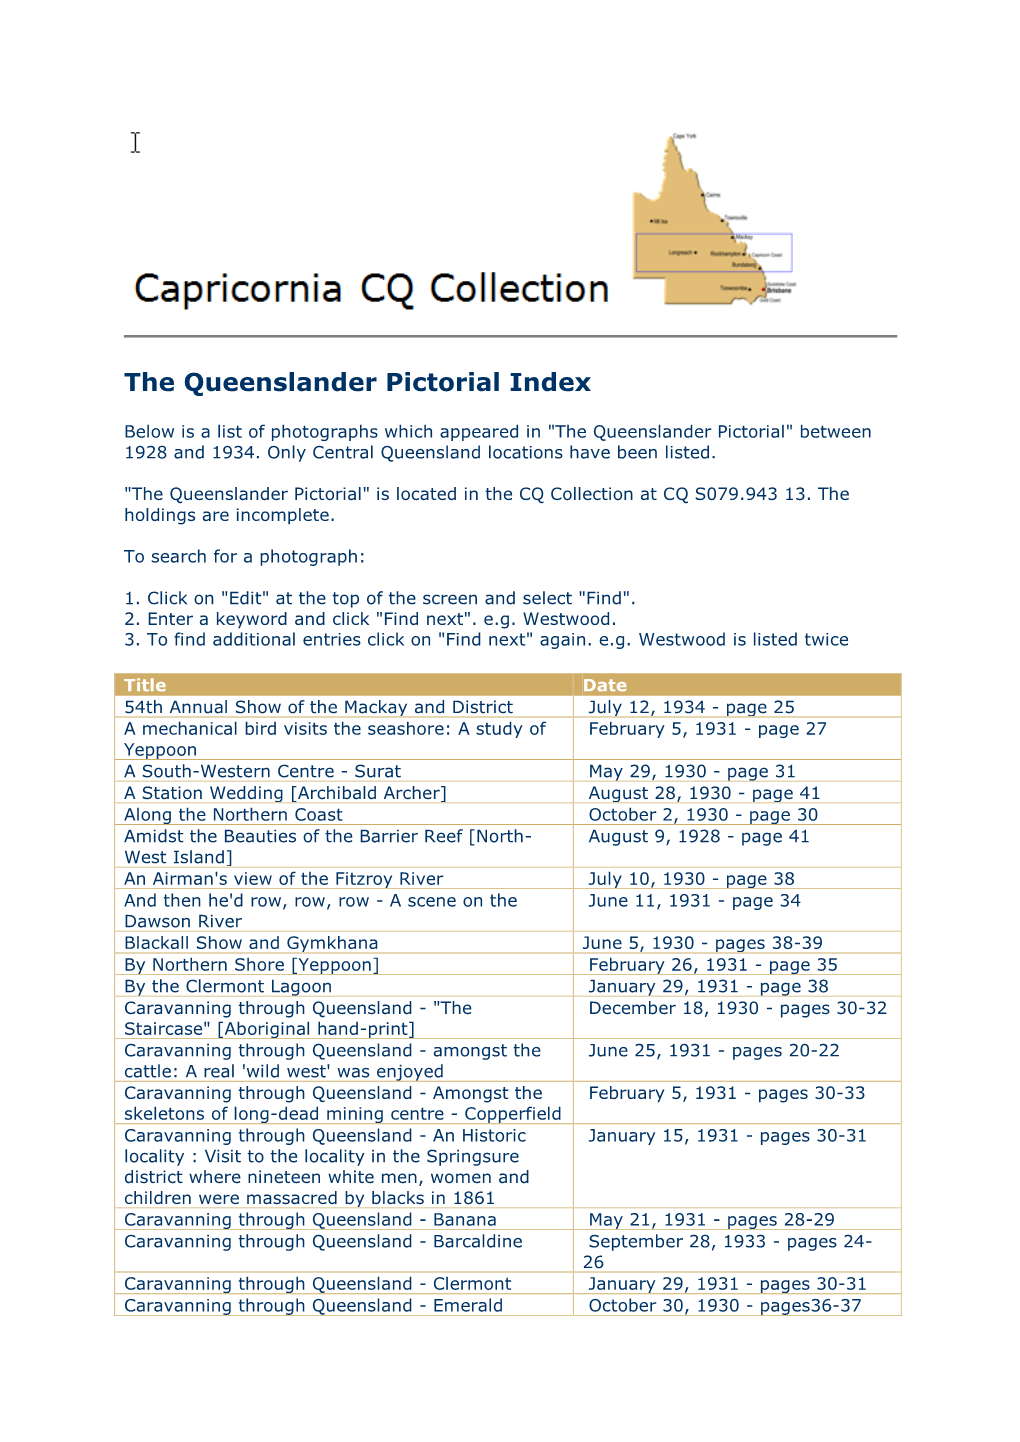 The Queenslander Pictorial Index